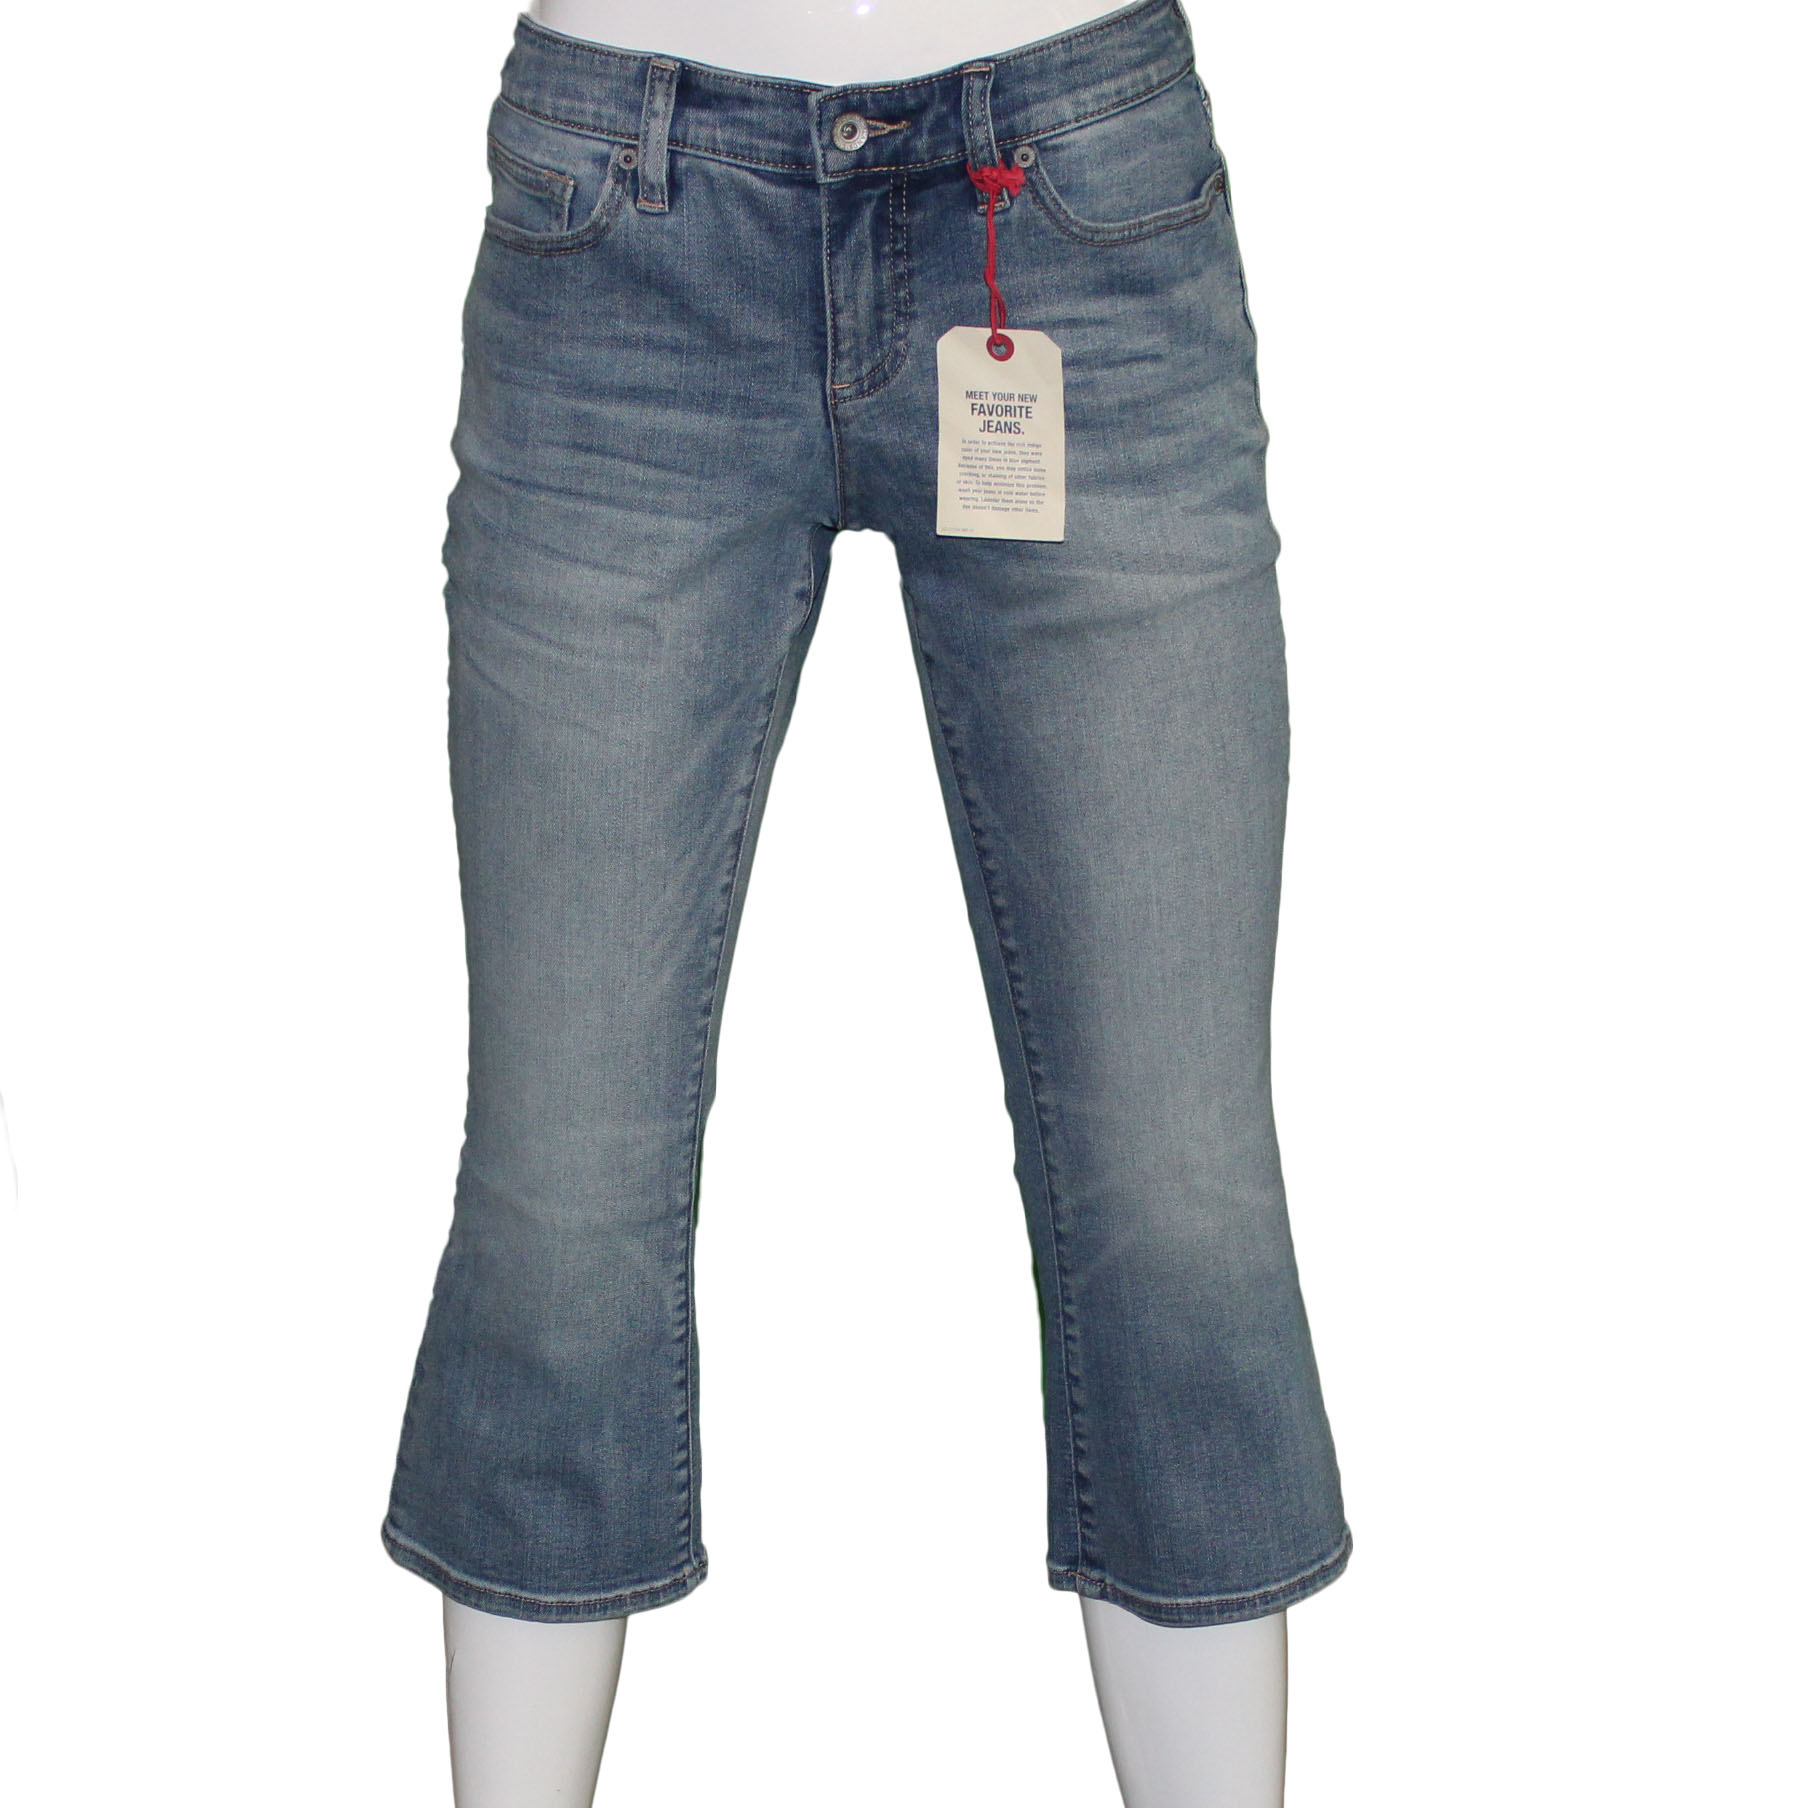 Lands' End Lands End Women's Size 2 Petite, Kick Crop Jeans Bayshore Indigo Wash